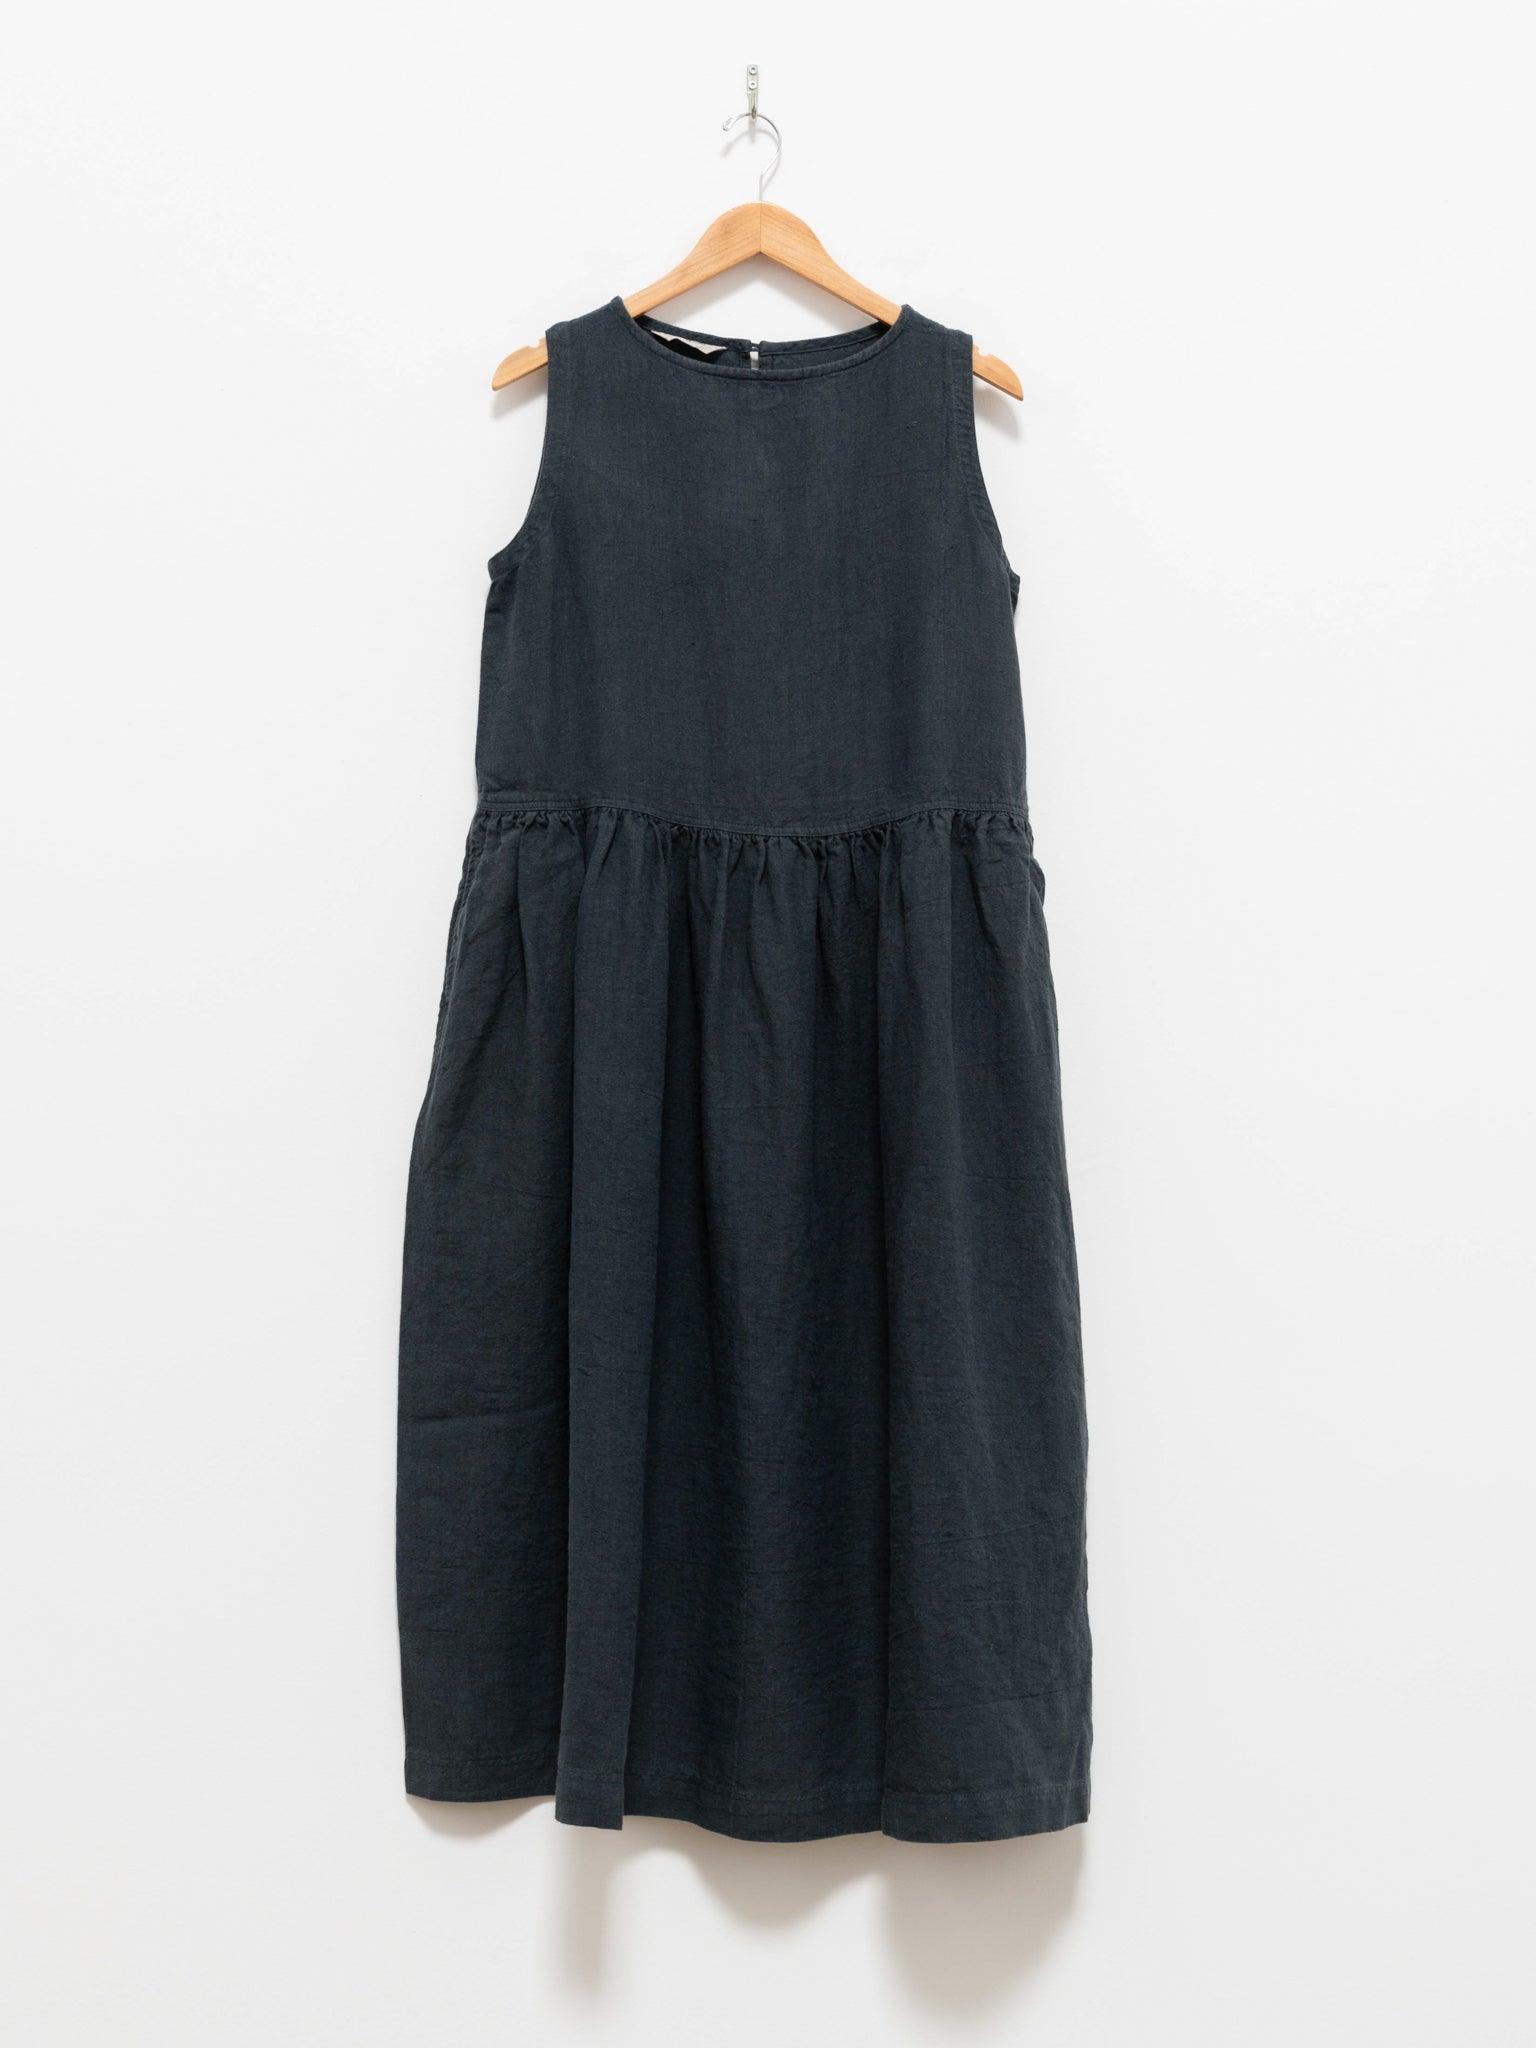 Namu Shop - Ichi Antiquites Azumadaki Sleeveless Dress - Charcoal